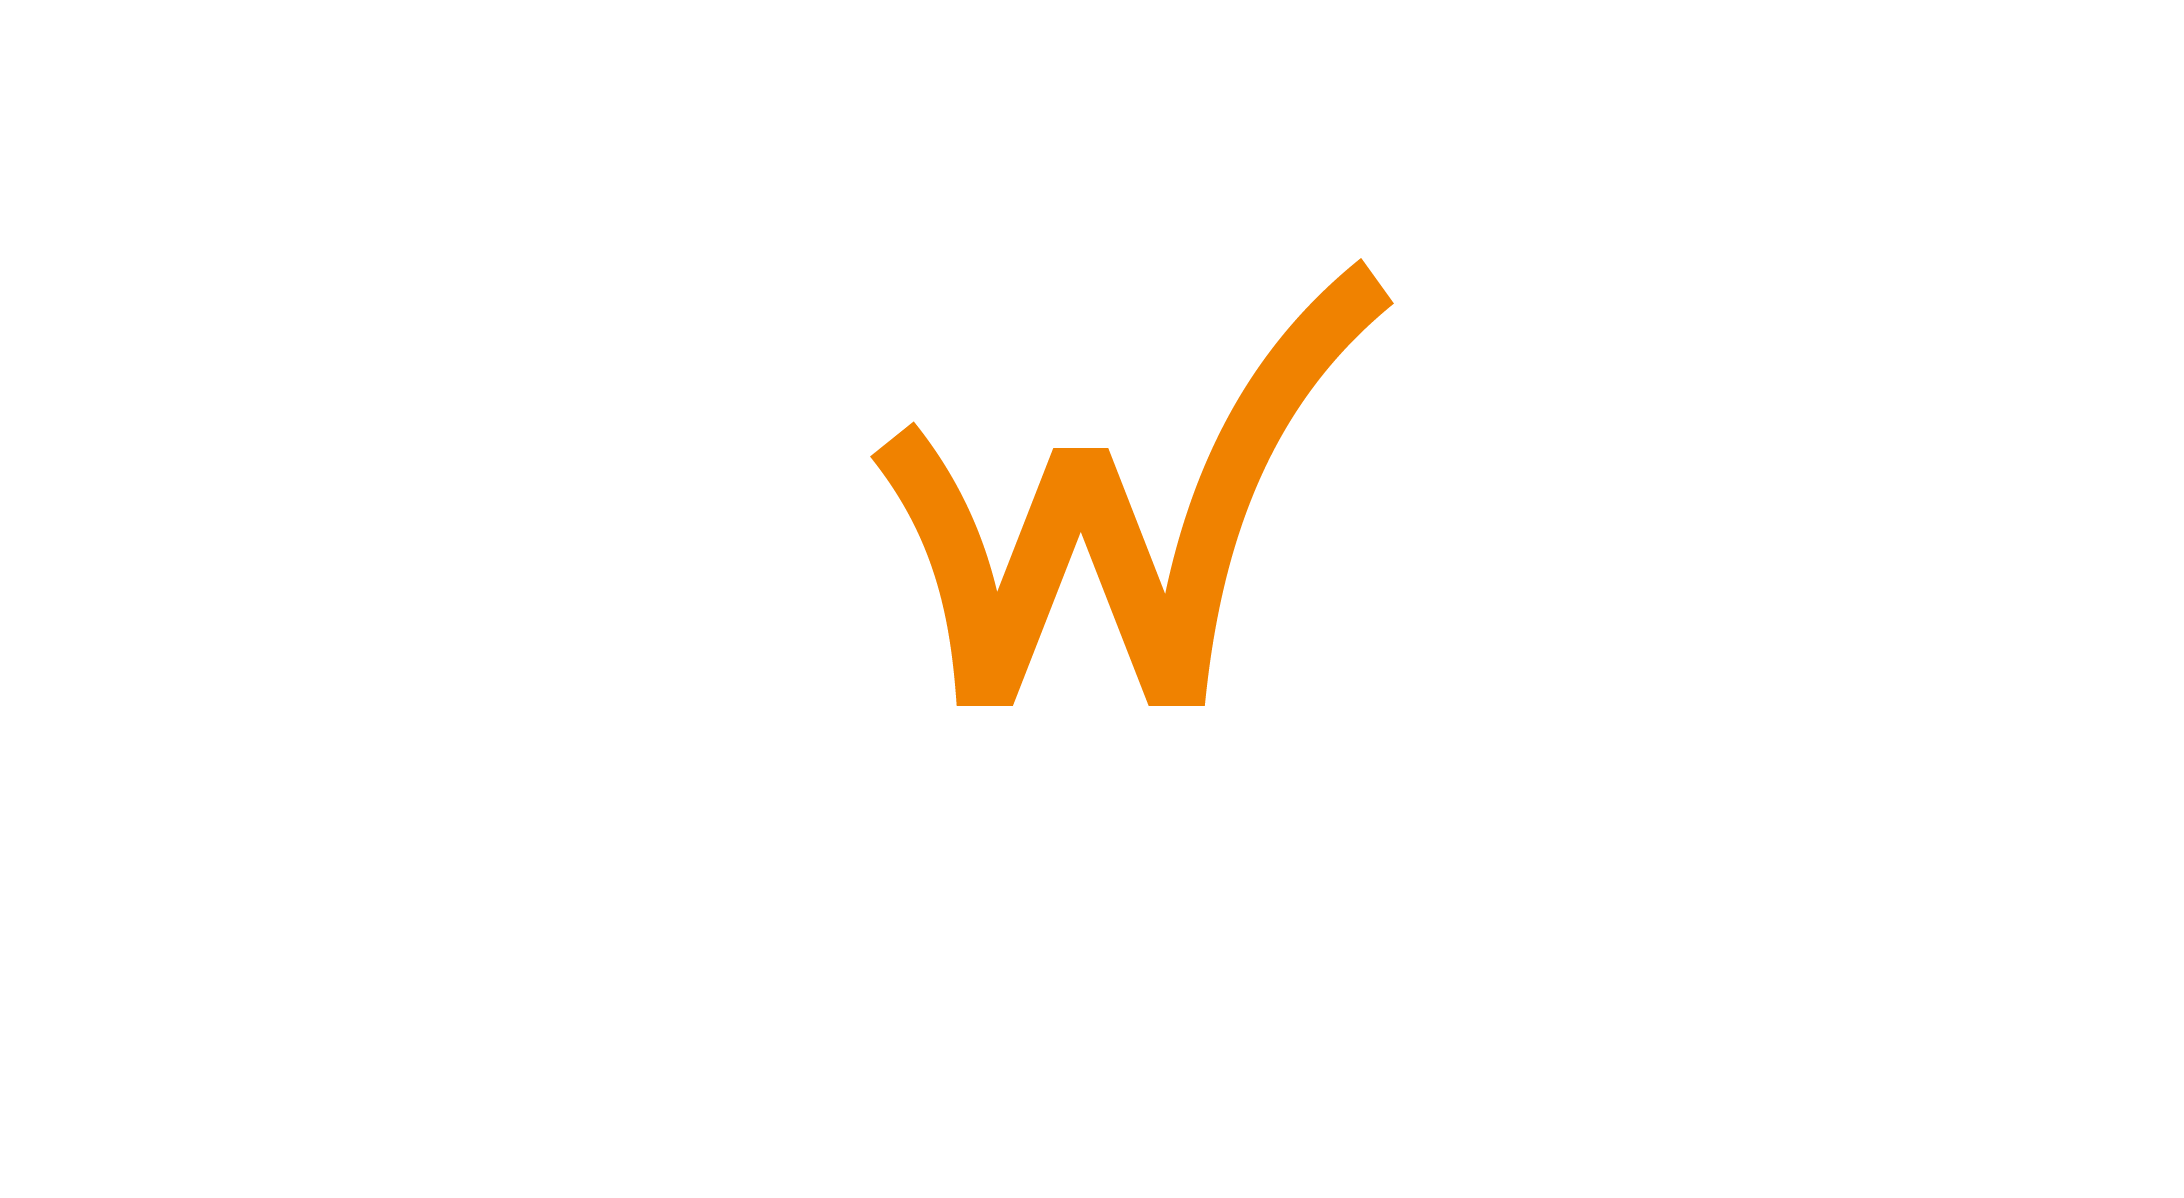 Edwyn tech